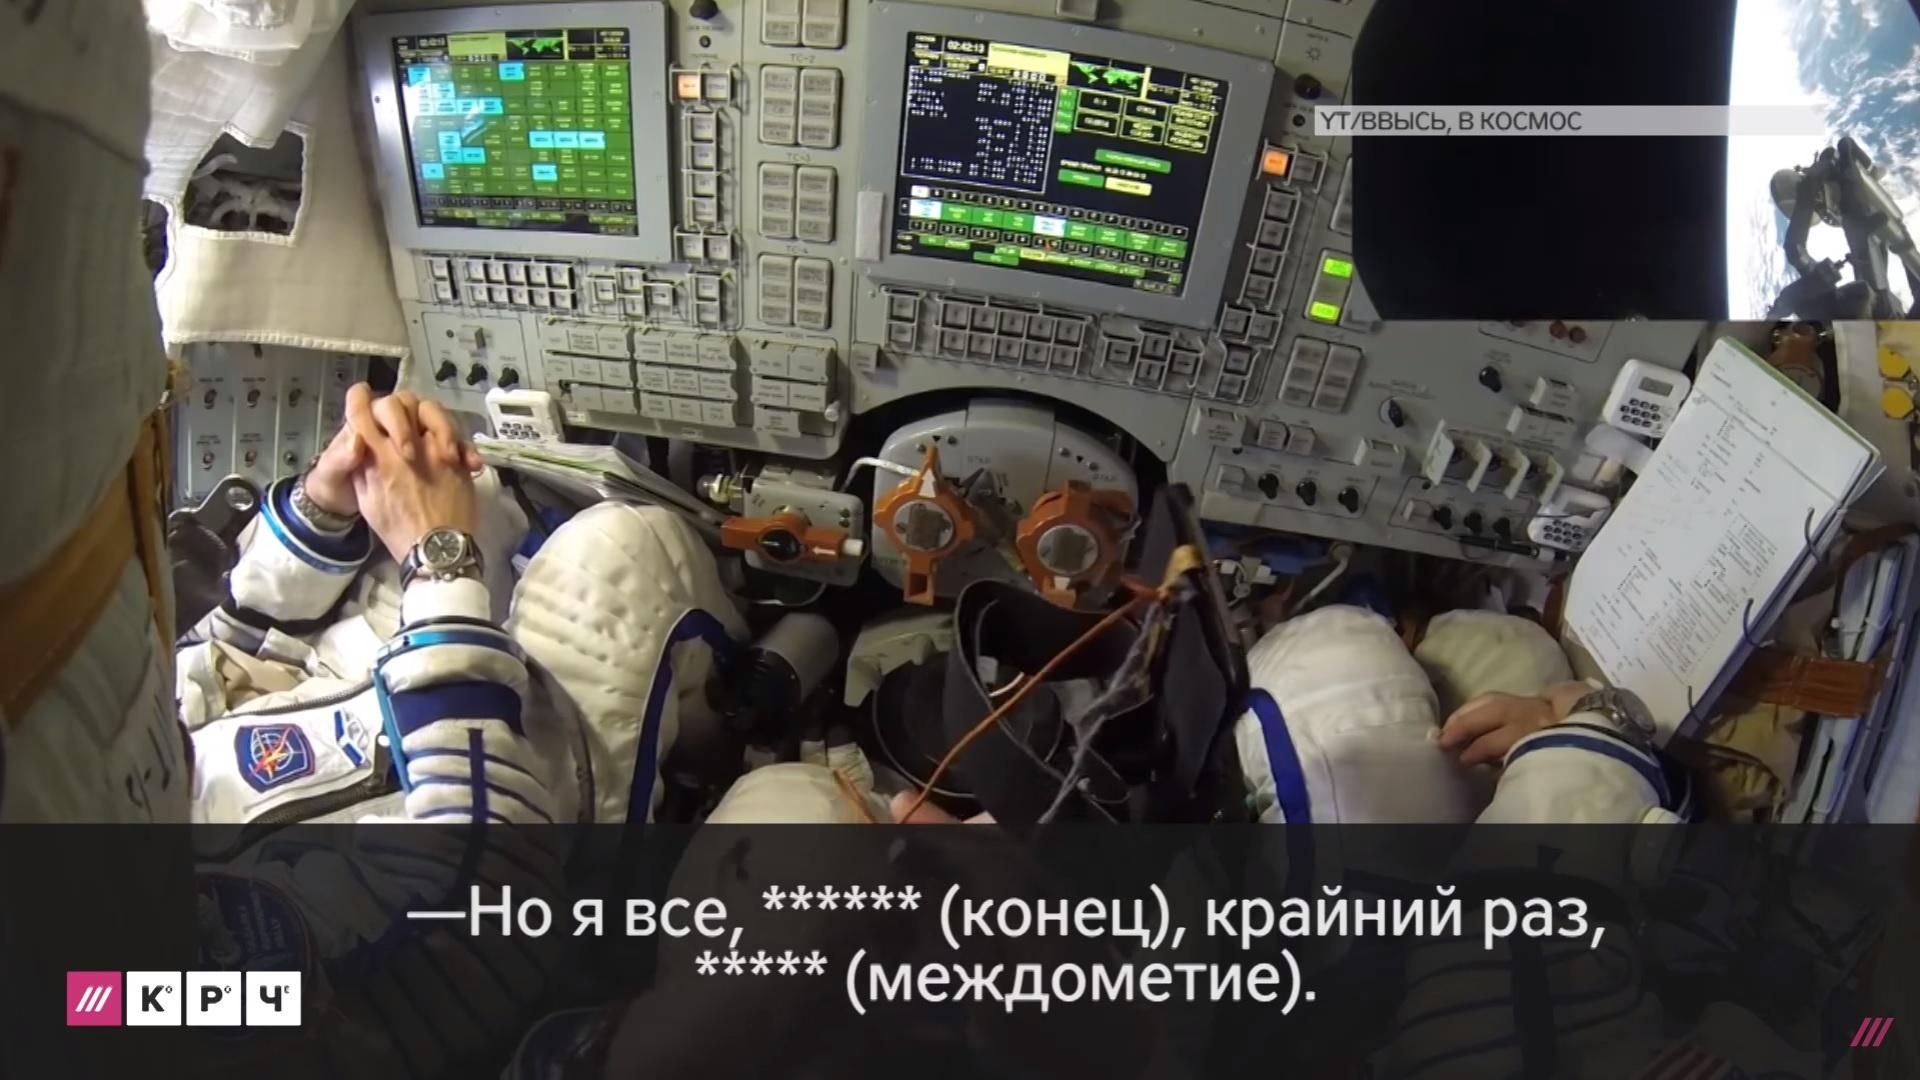 Появилось видео нецензурного диалога российских космонавтов